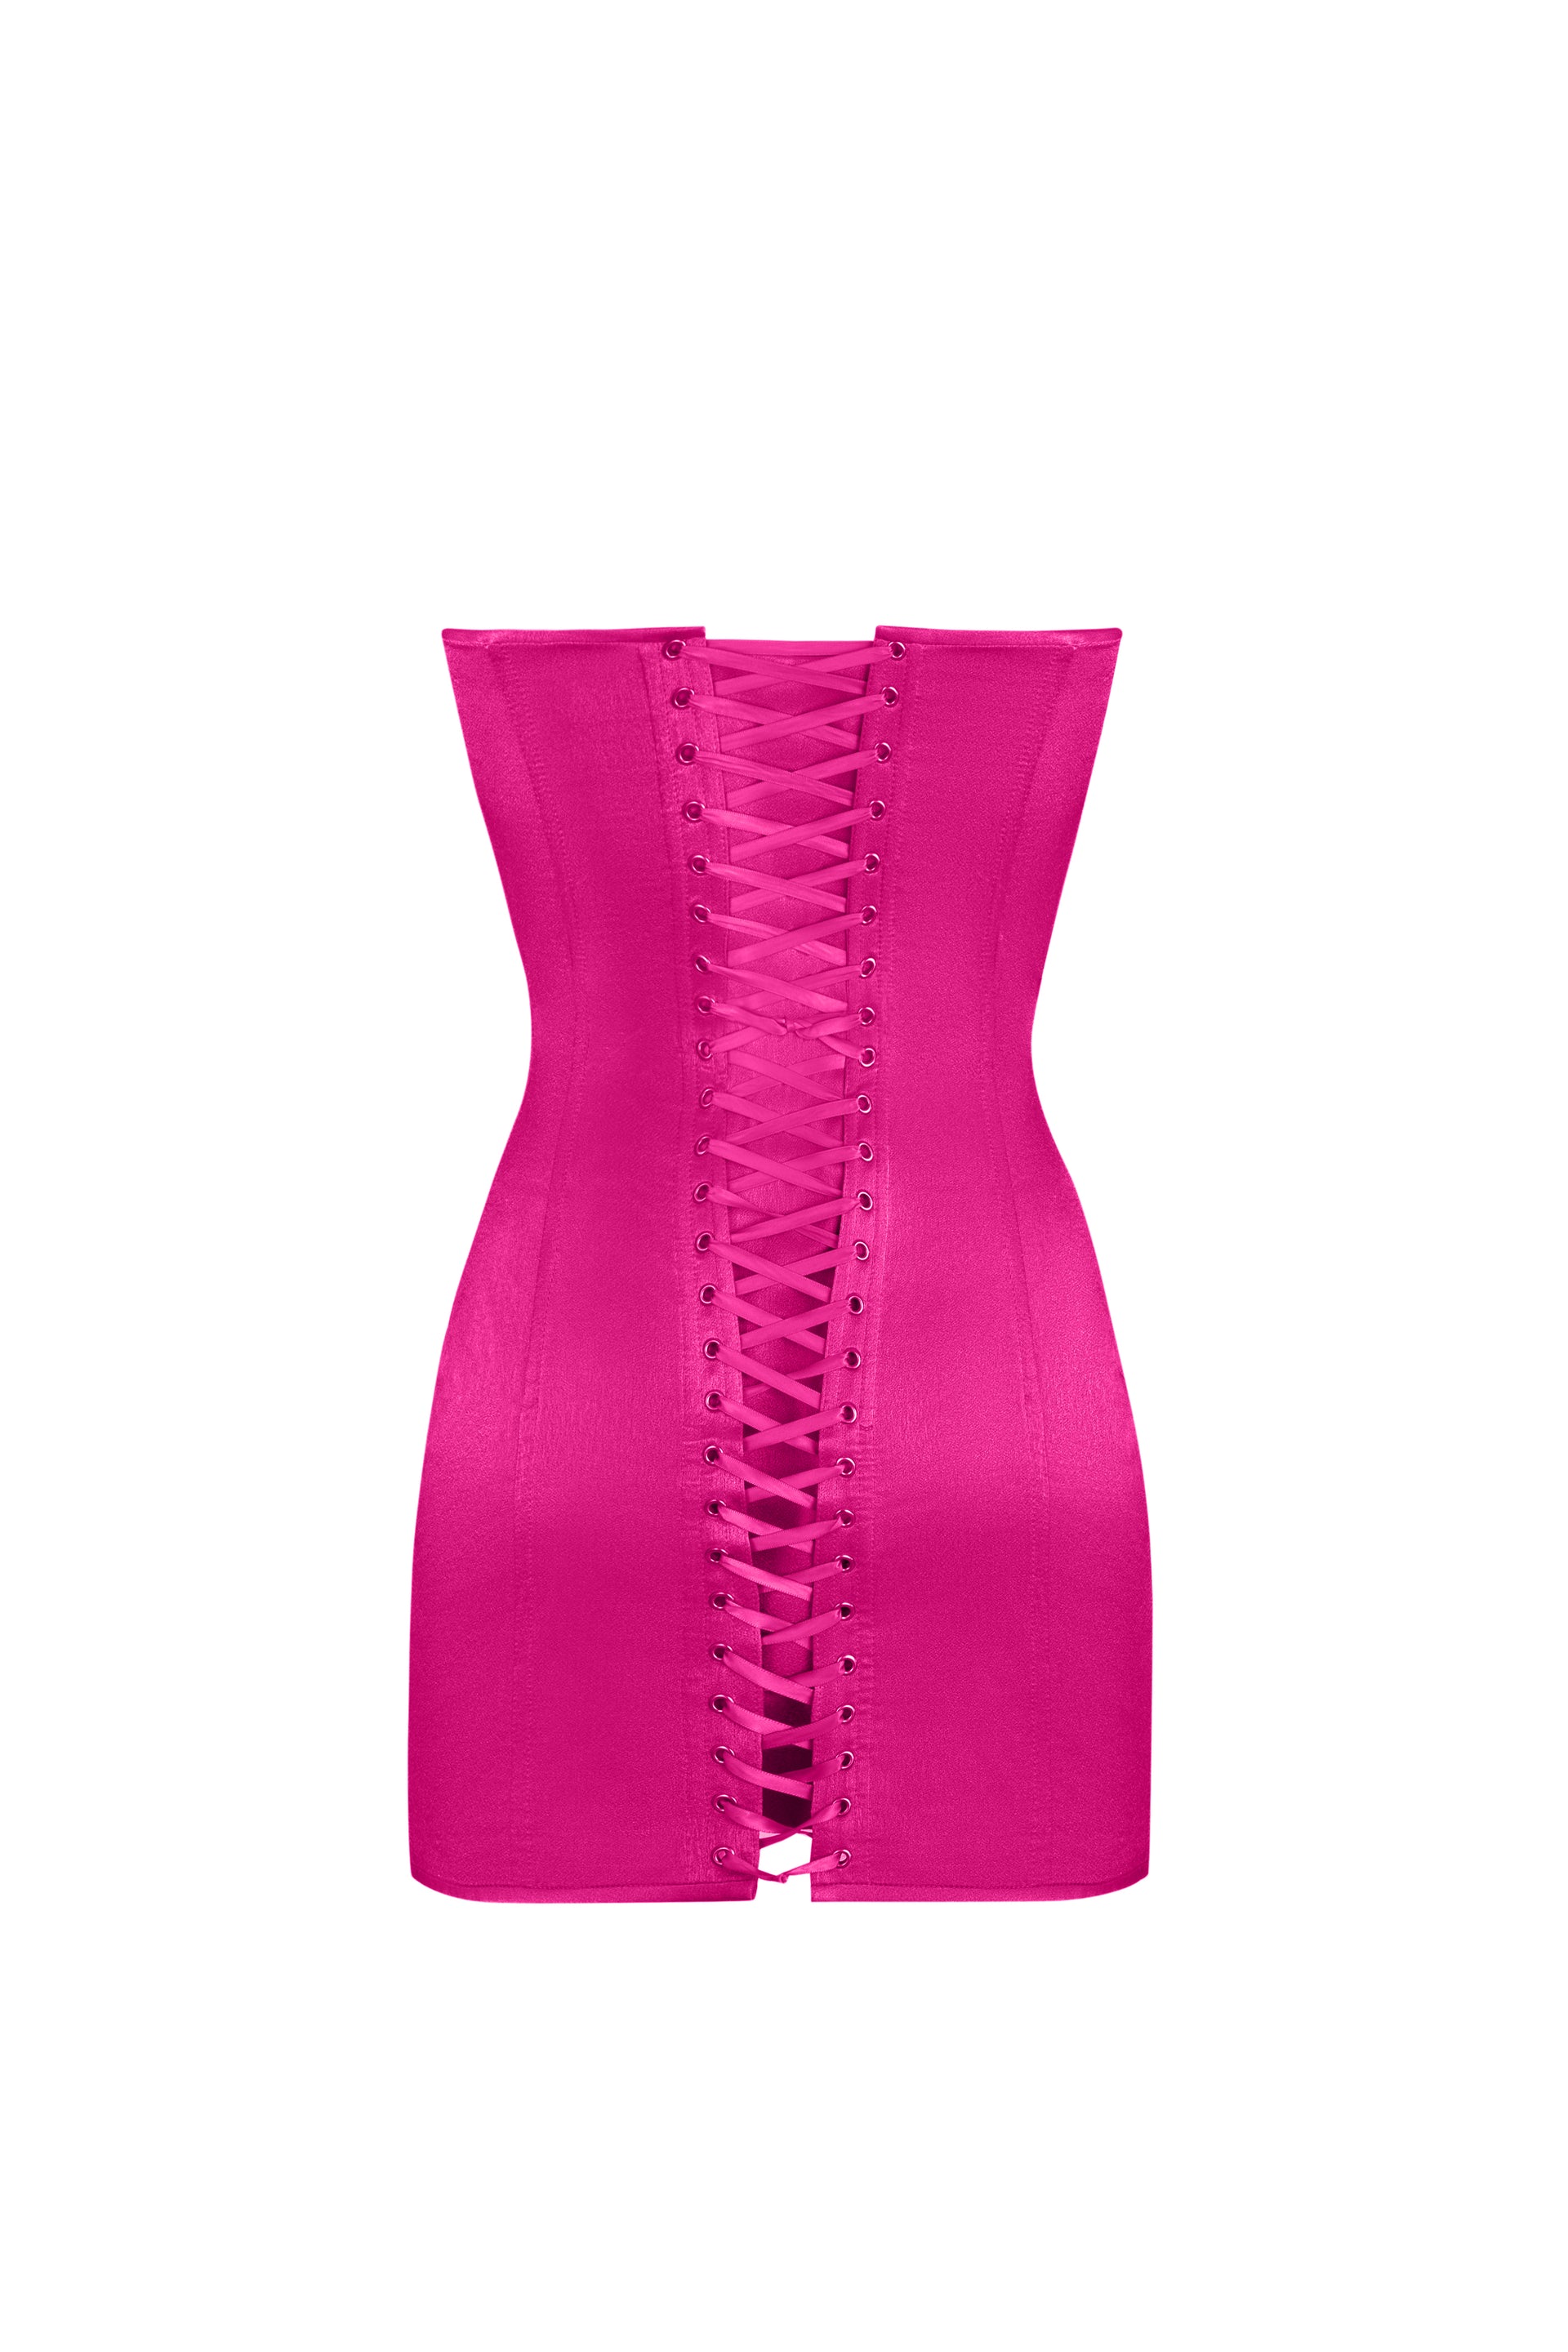 Hot pink satin dress. - STATNAIA